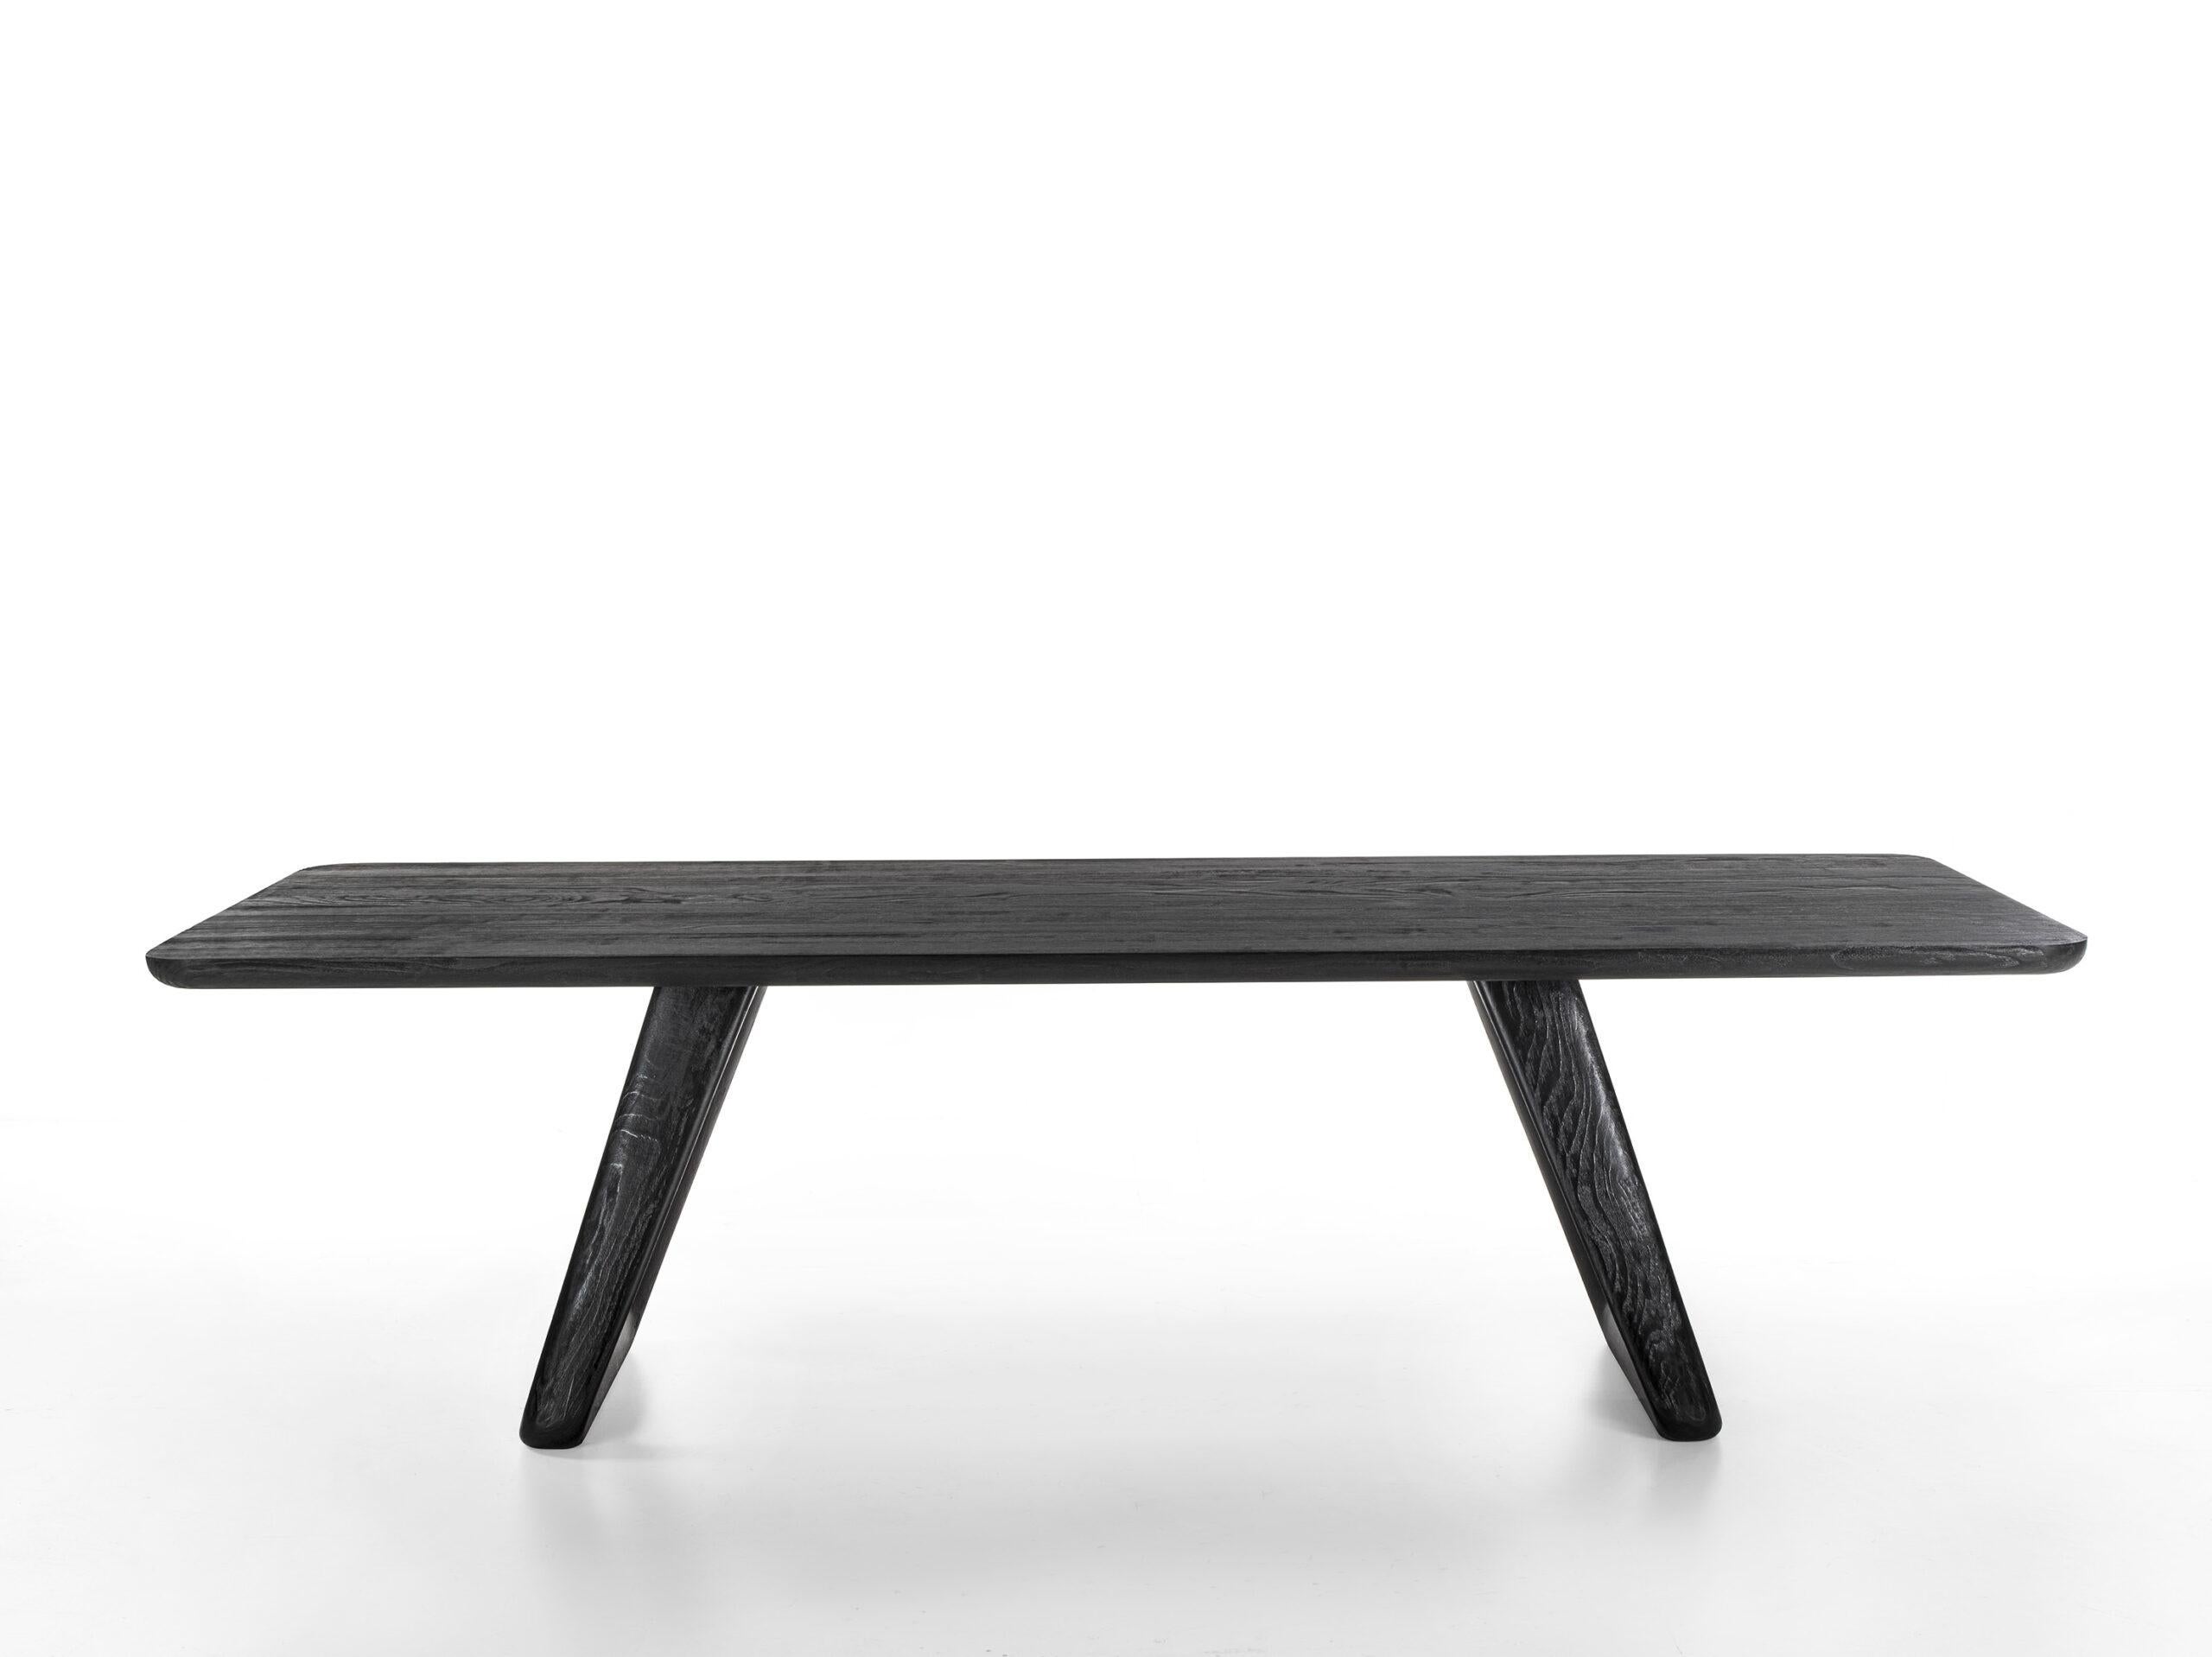 Tisch mit verleimter Massivholzplatte und abgeschrägten Kanten, charakterisiert durch zwei Beine aus Massivholz, deren raffinierte Geometrie durch das Zusammentreffen von geraden Linien mit geschwungenen Linien und abgerundeten Ecken bestimmt